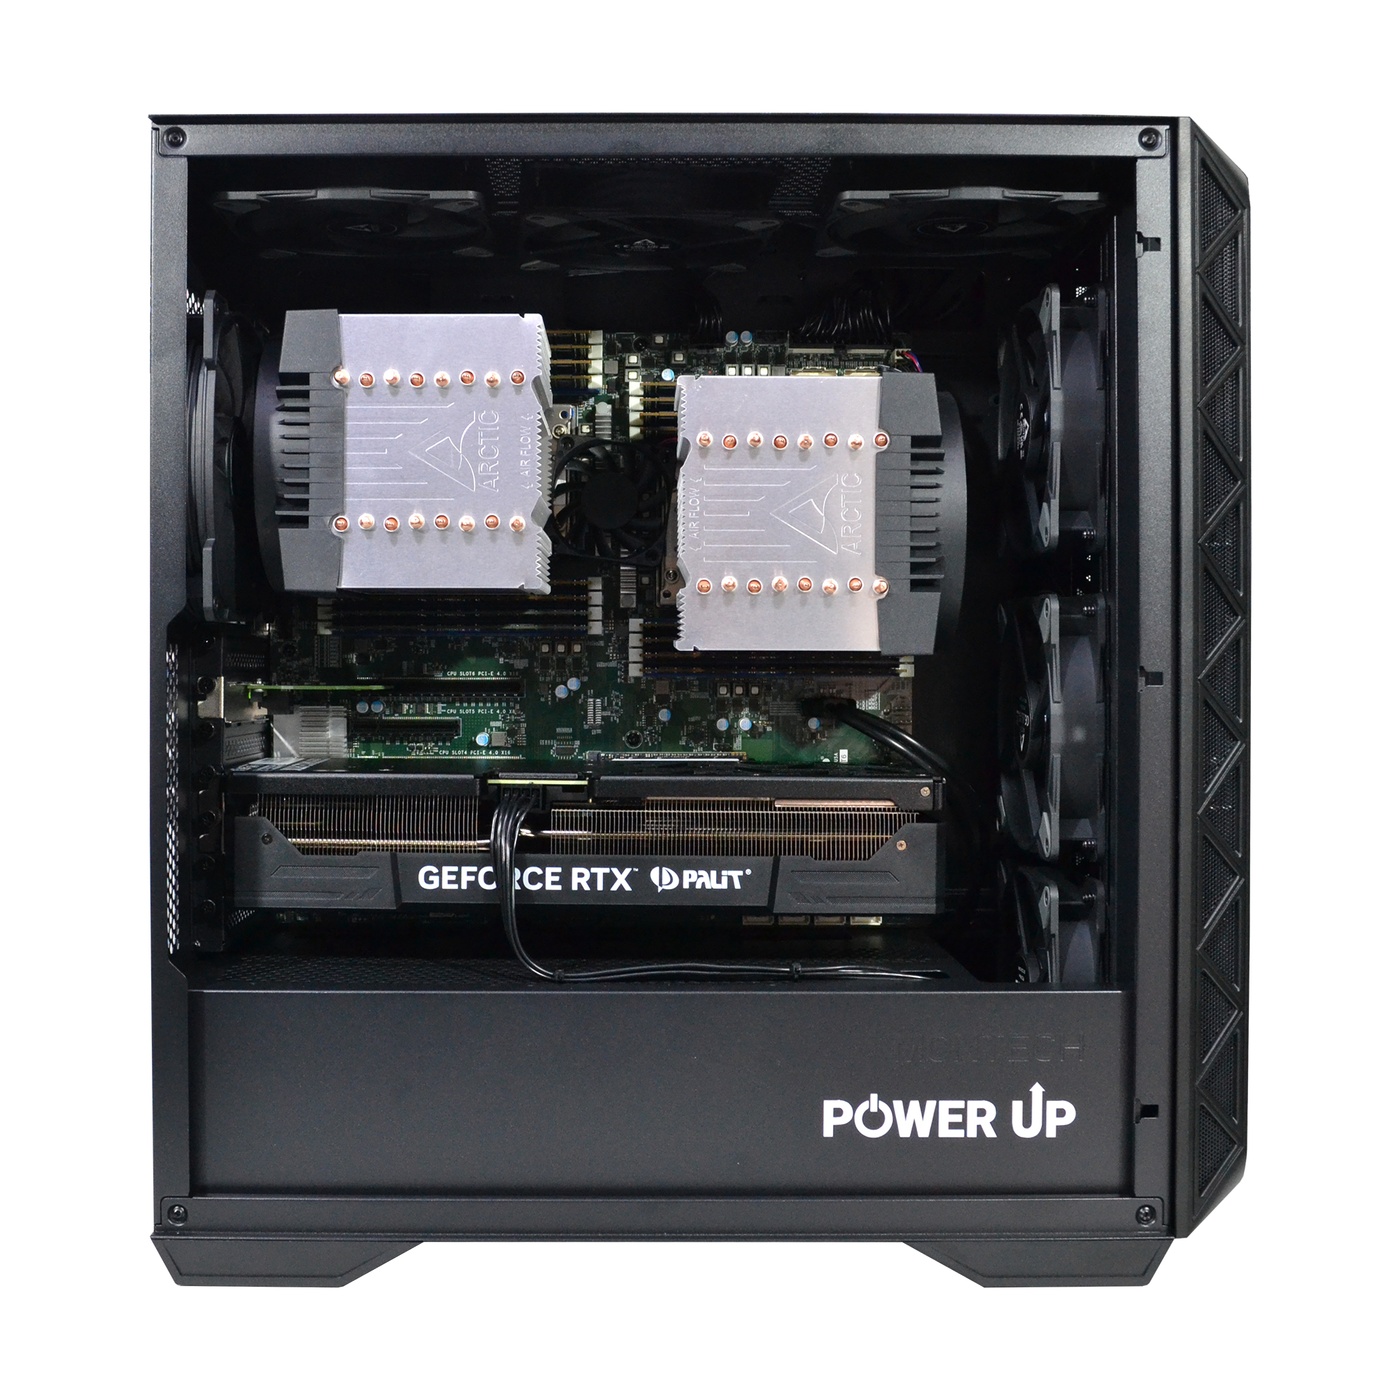 Двухпроцессорная рабочая станция PowerUp #401 AMD EPYC 7642 x2/256 GB/SSD 2TB/GeForce RTX 4070 Super 12GB